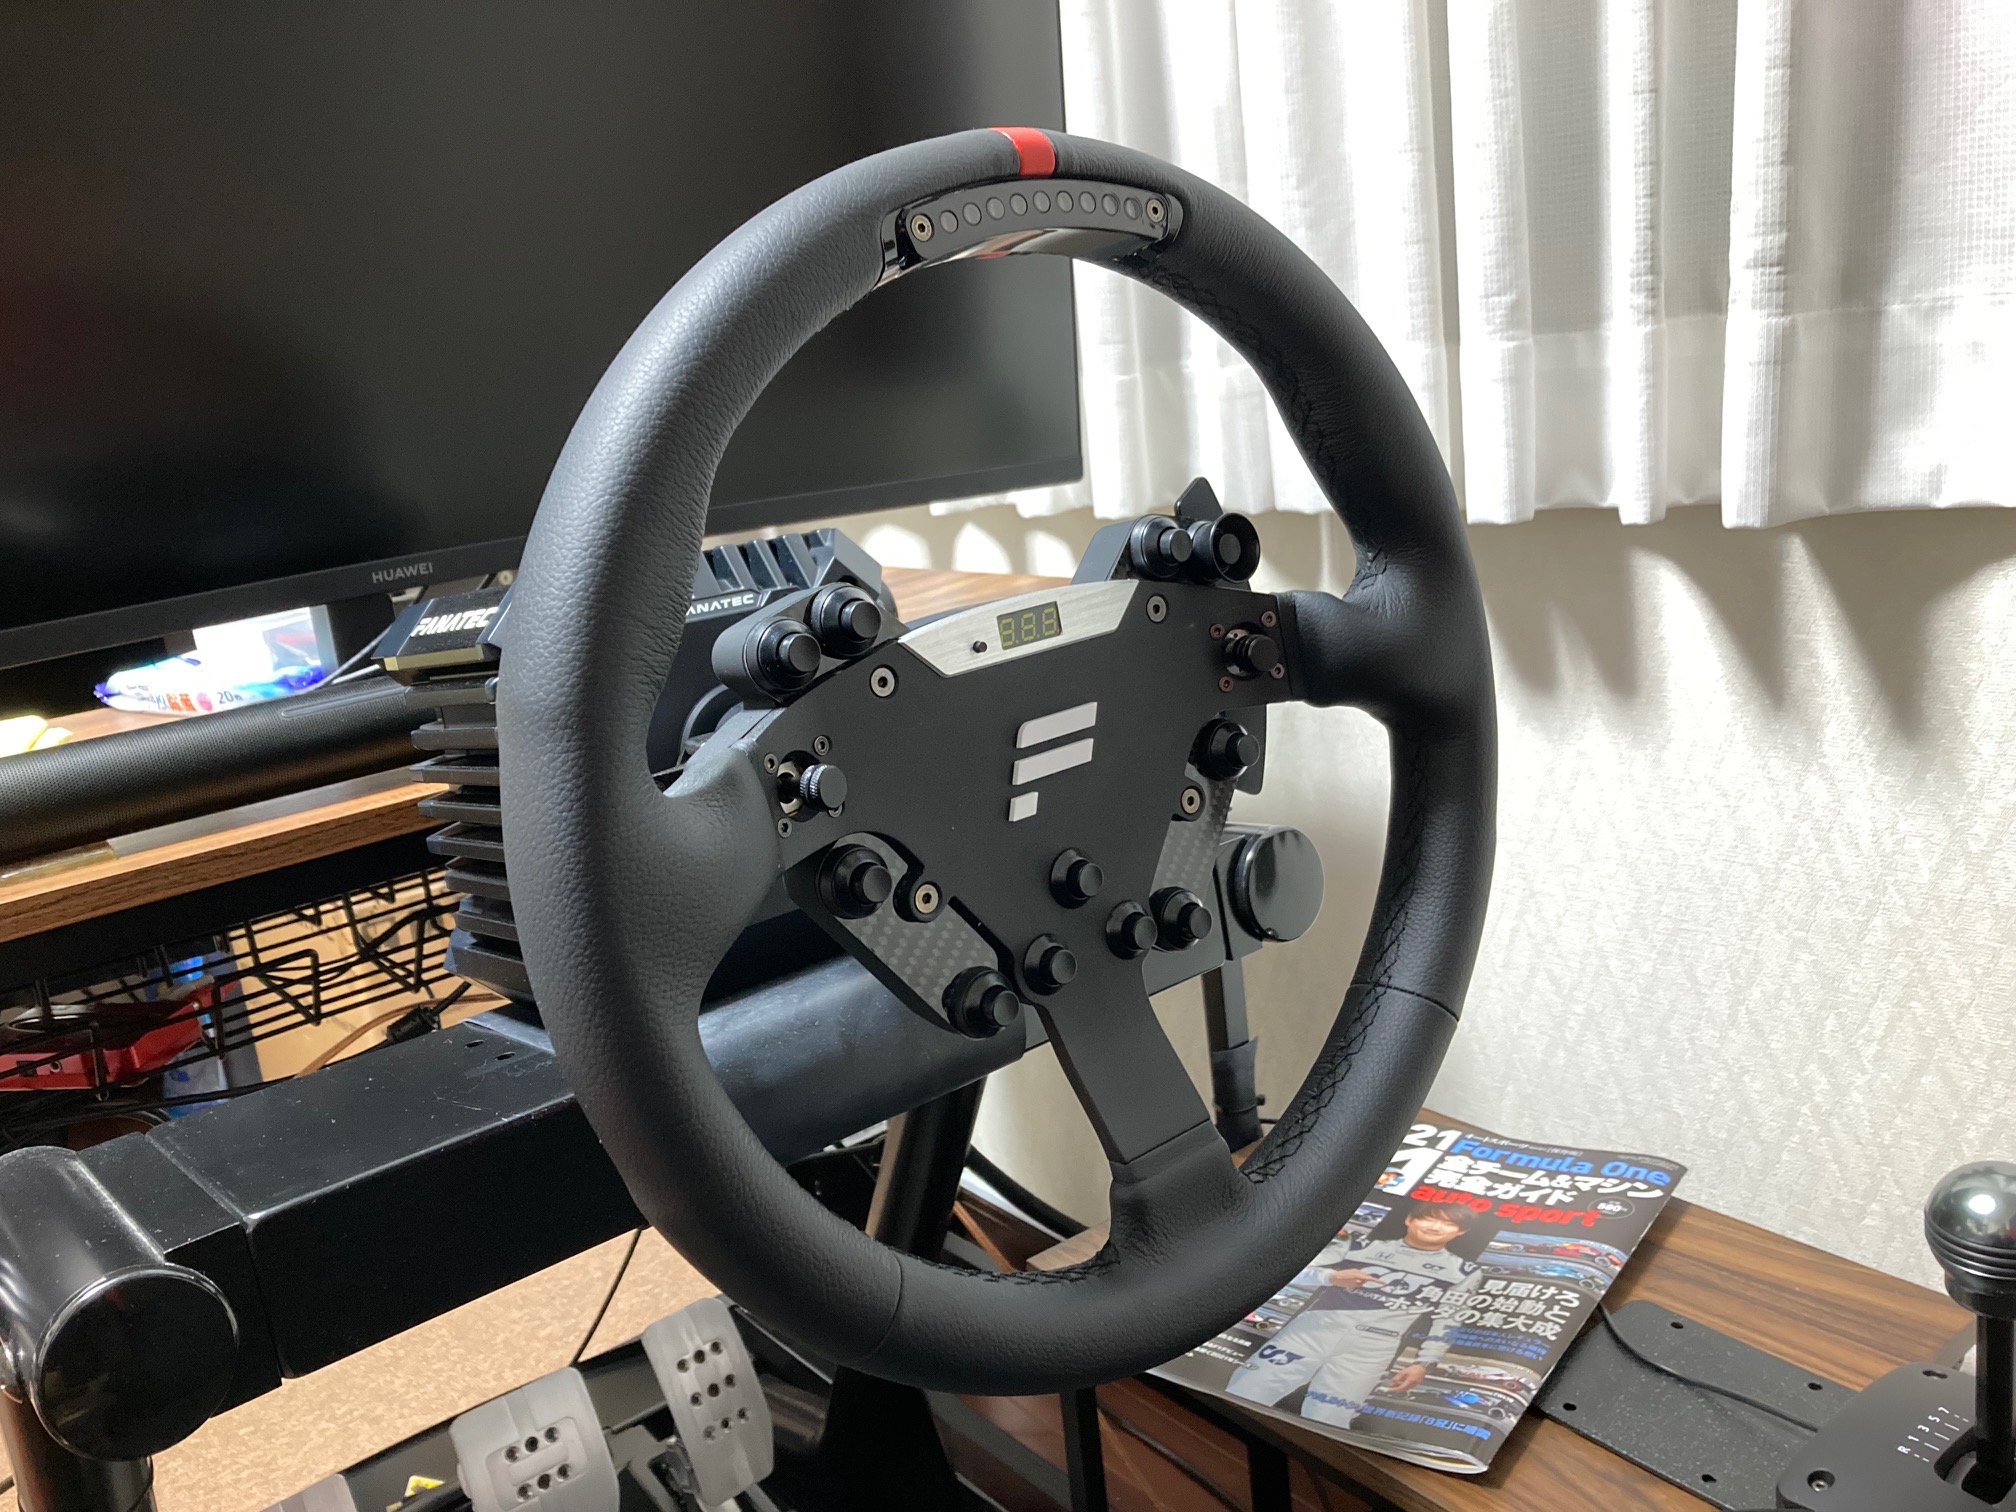 高級ステアリング（？）『Fanatec ClubSport Steering Wheel RS』購入 